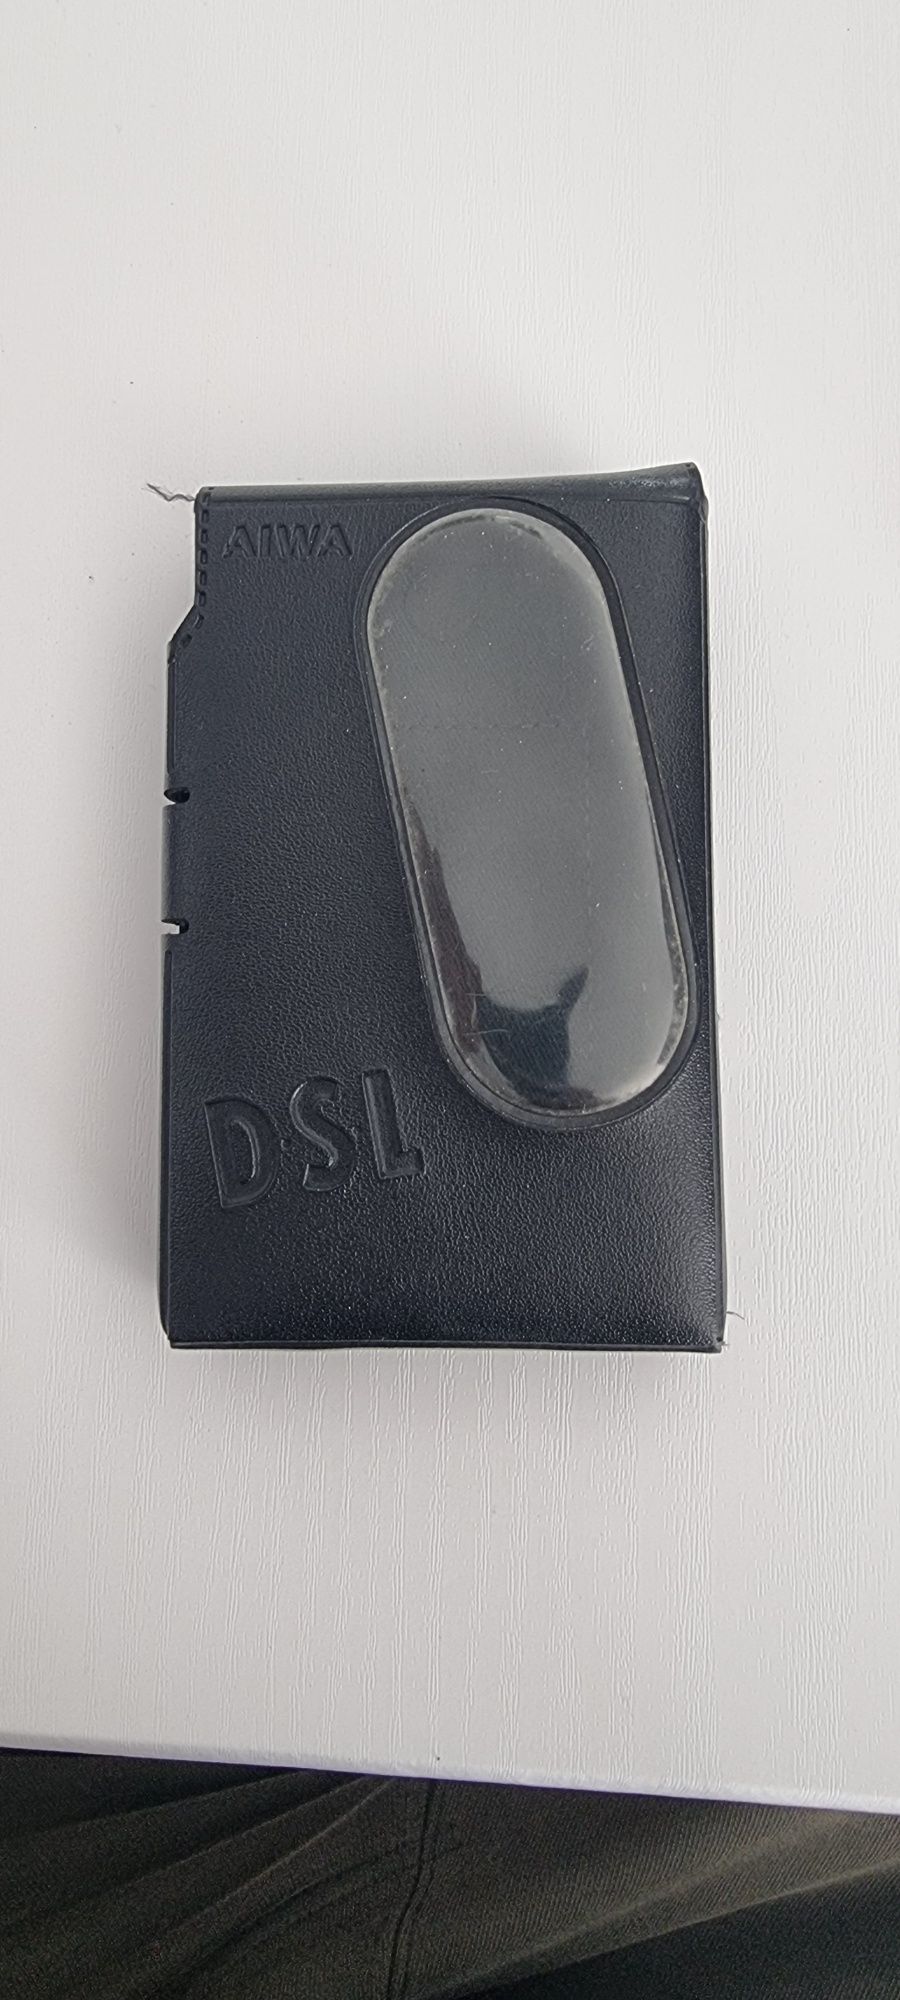 Walkman Aiwa DSL HS-P202